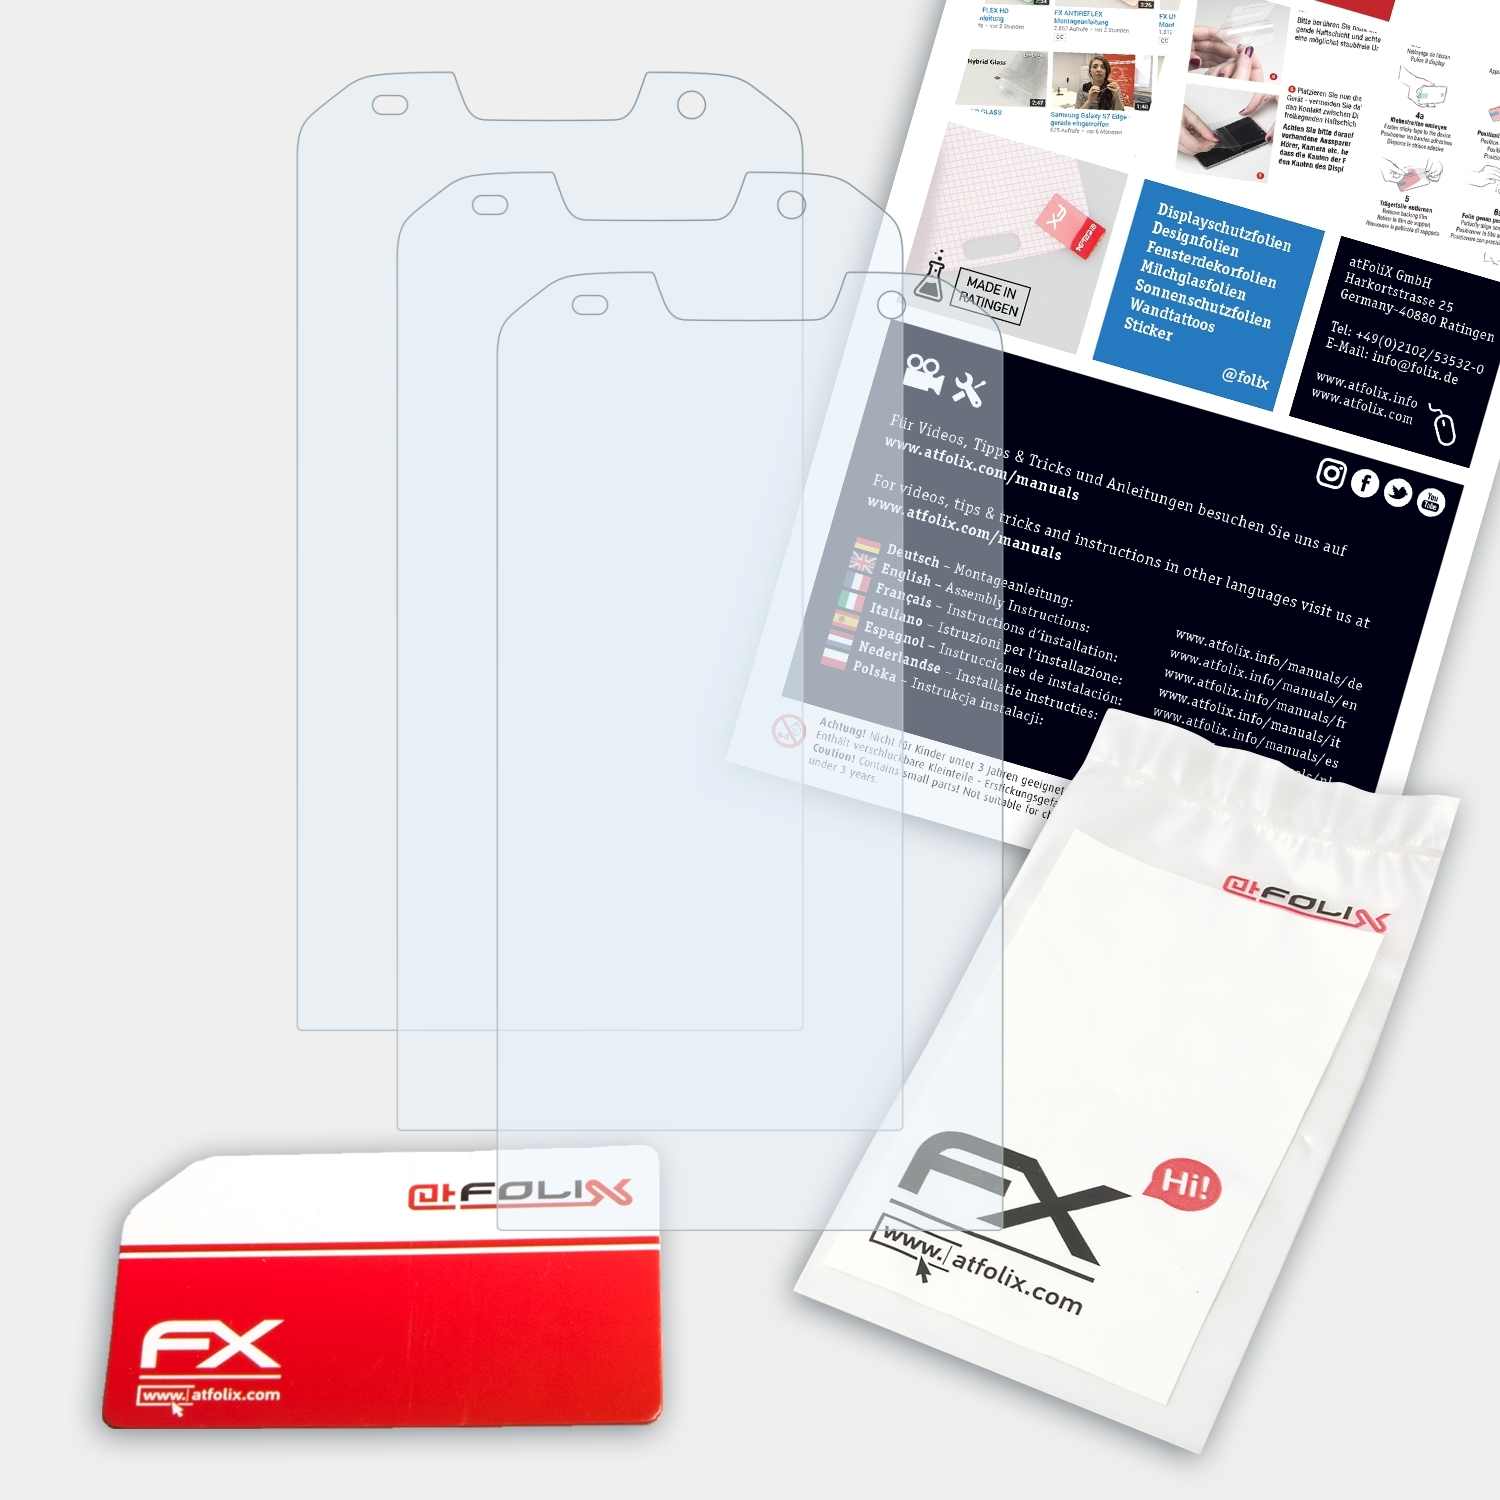 ATFOLIX 3x FX-Clear Displayschutz(für Doogee S30)